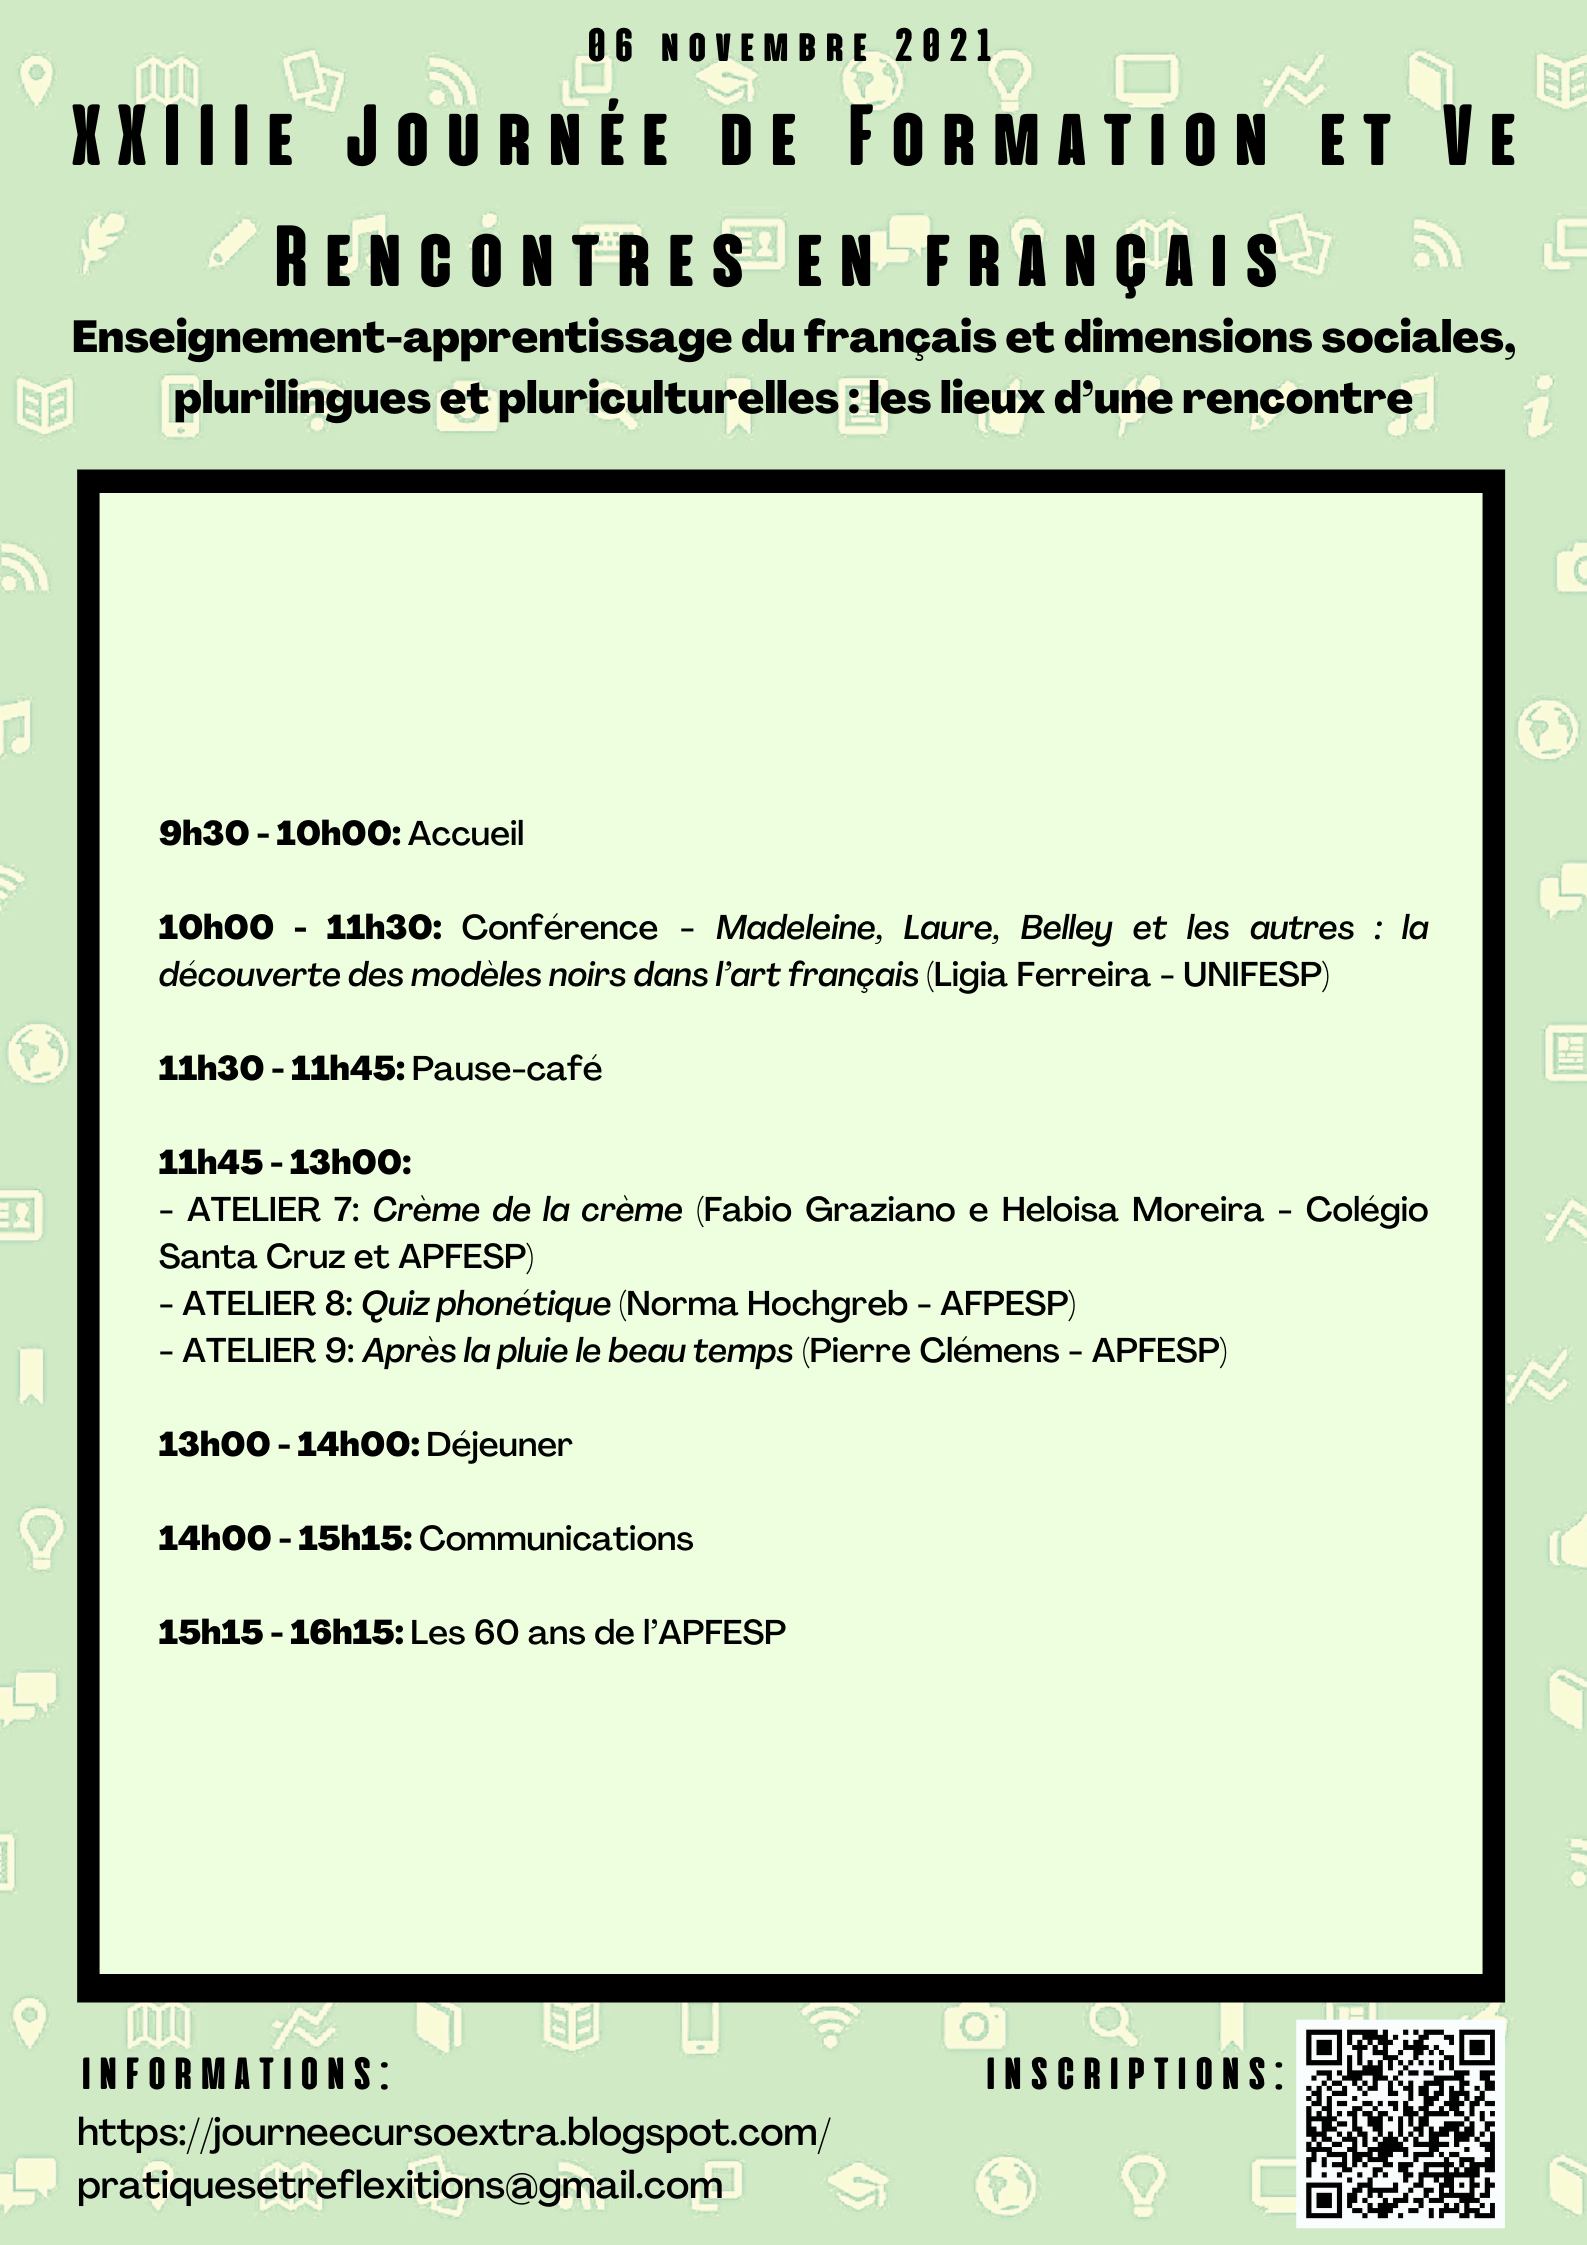 Programação da XXIIIe Journée de Formation et Ve Rencontres en français, dia 06